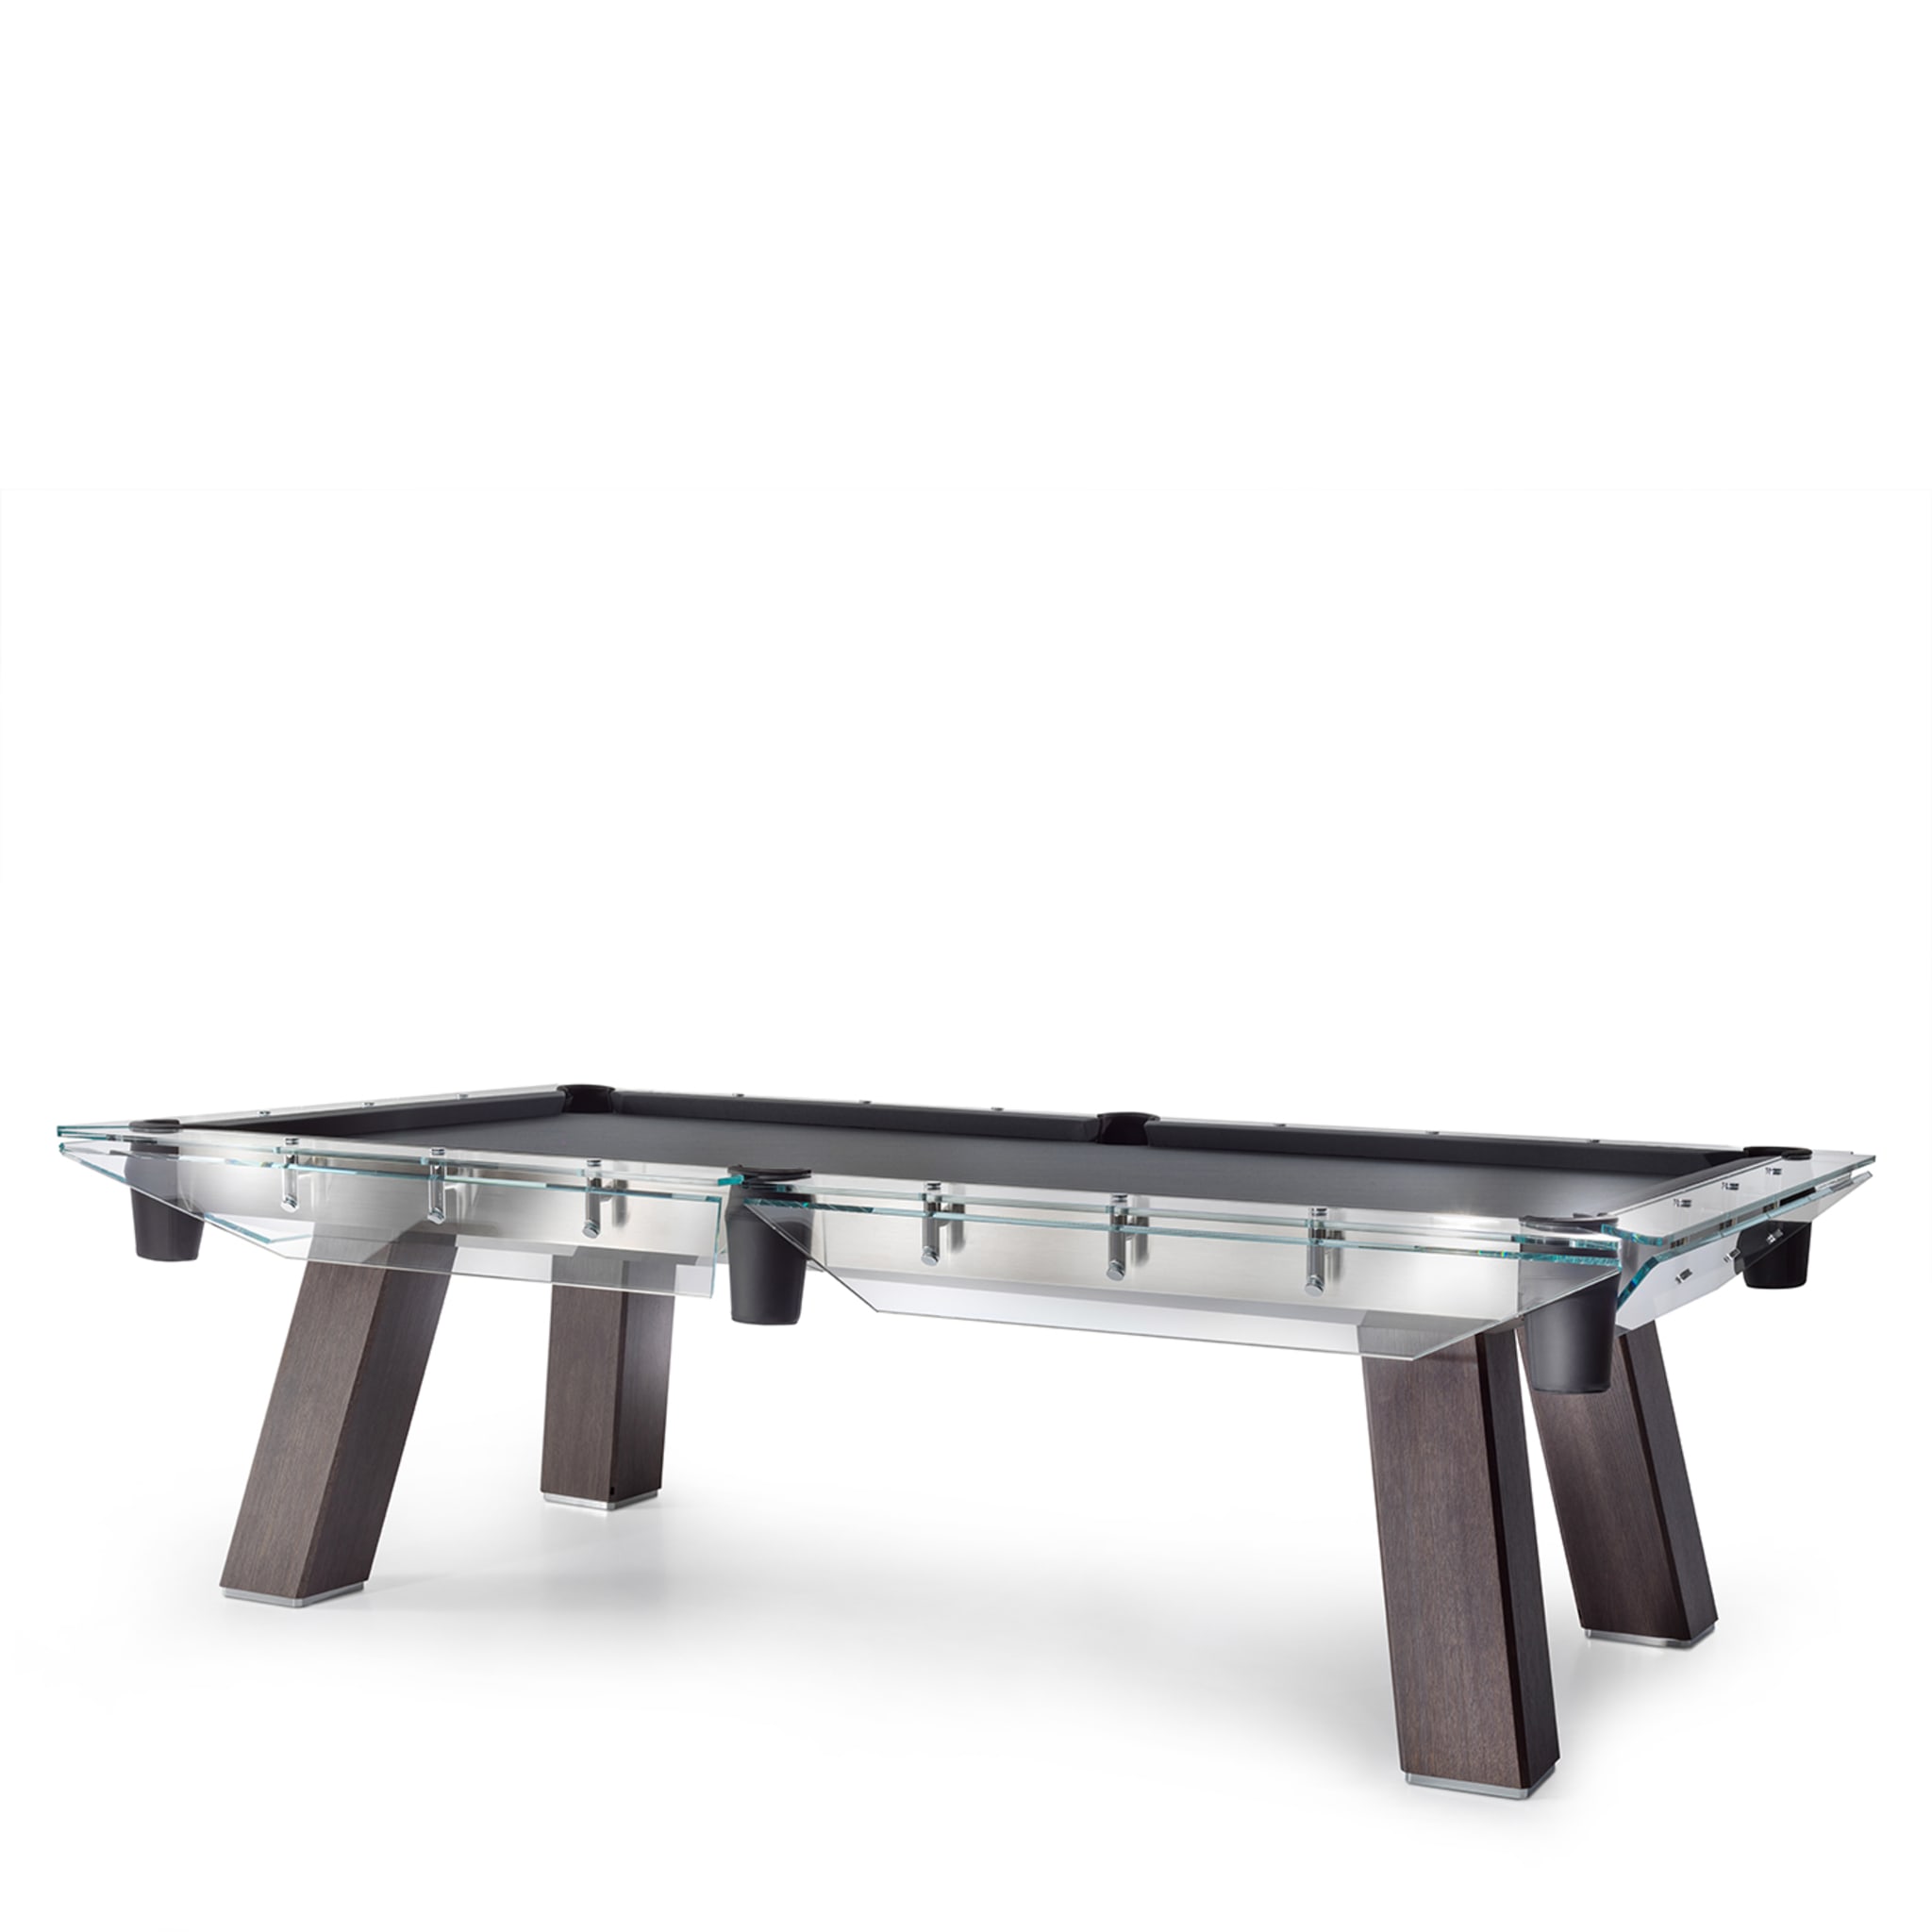 Filotto Wood-Edition Billiard Table - Alternative view 2